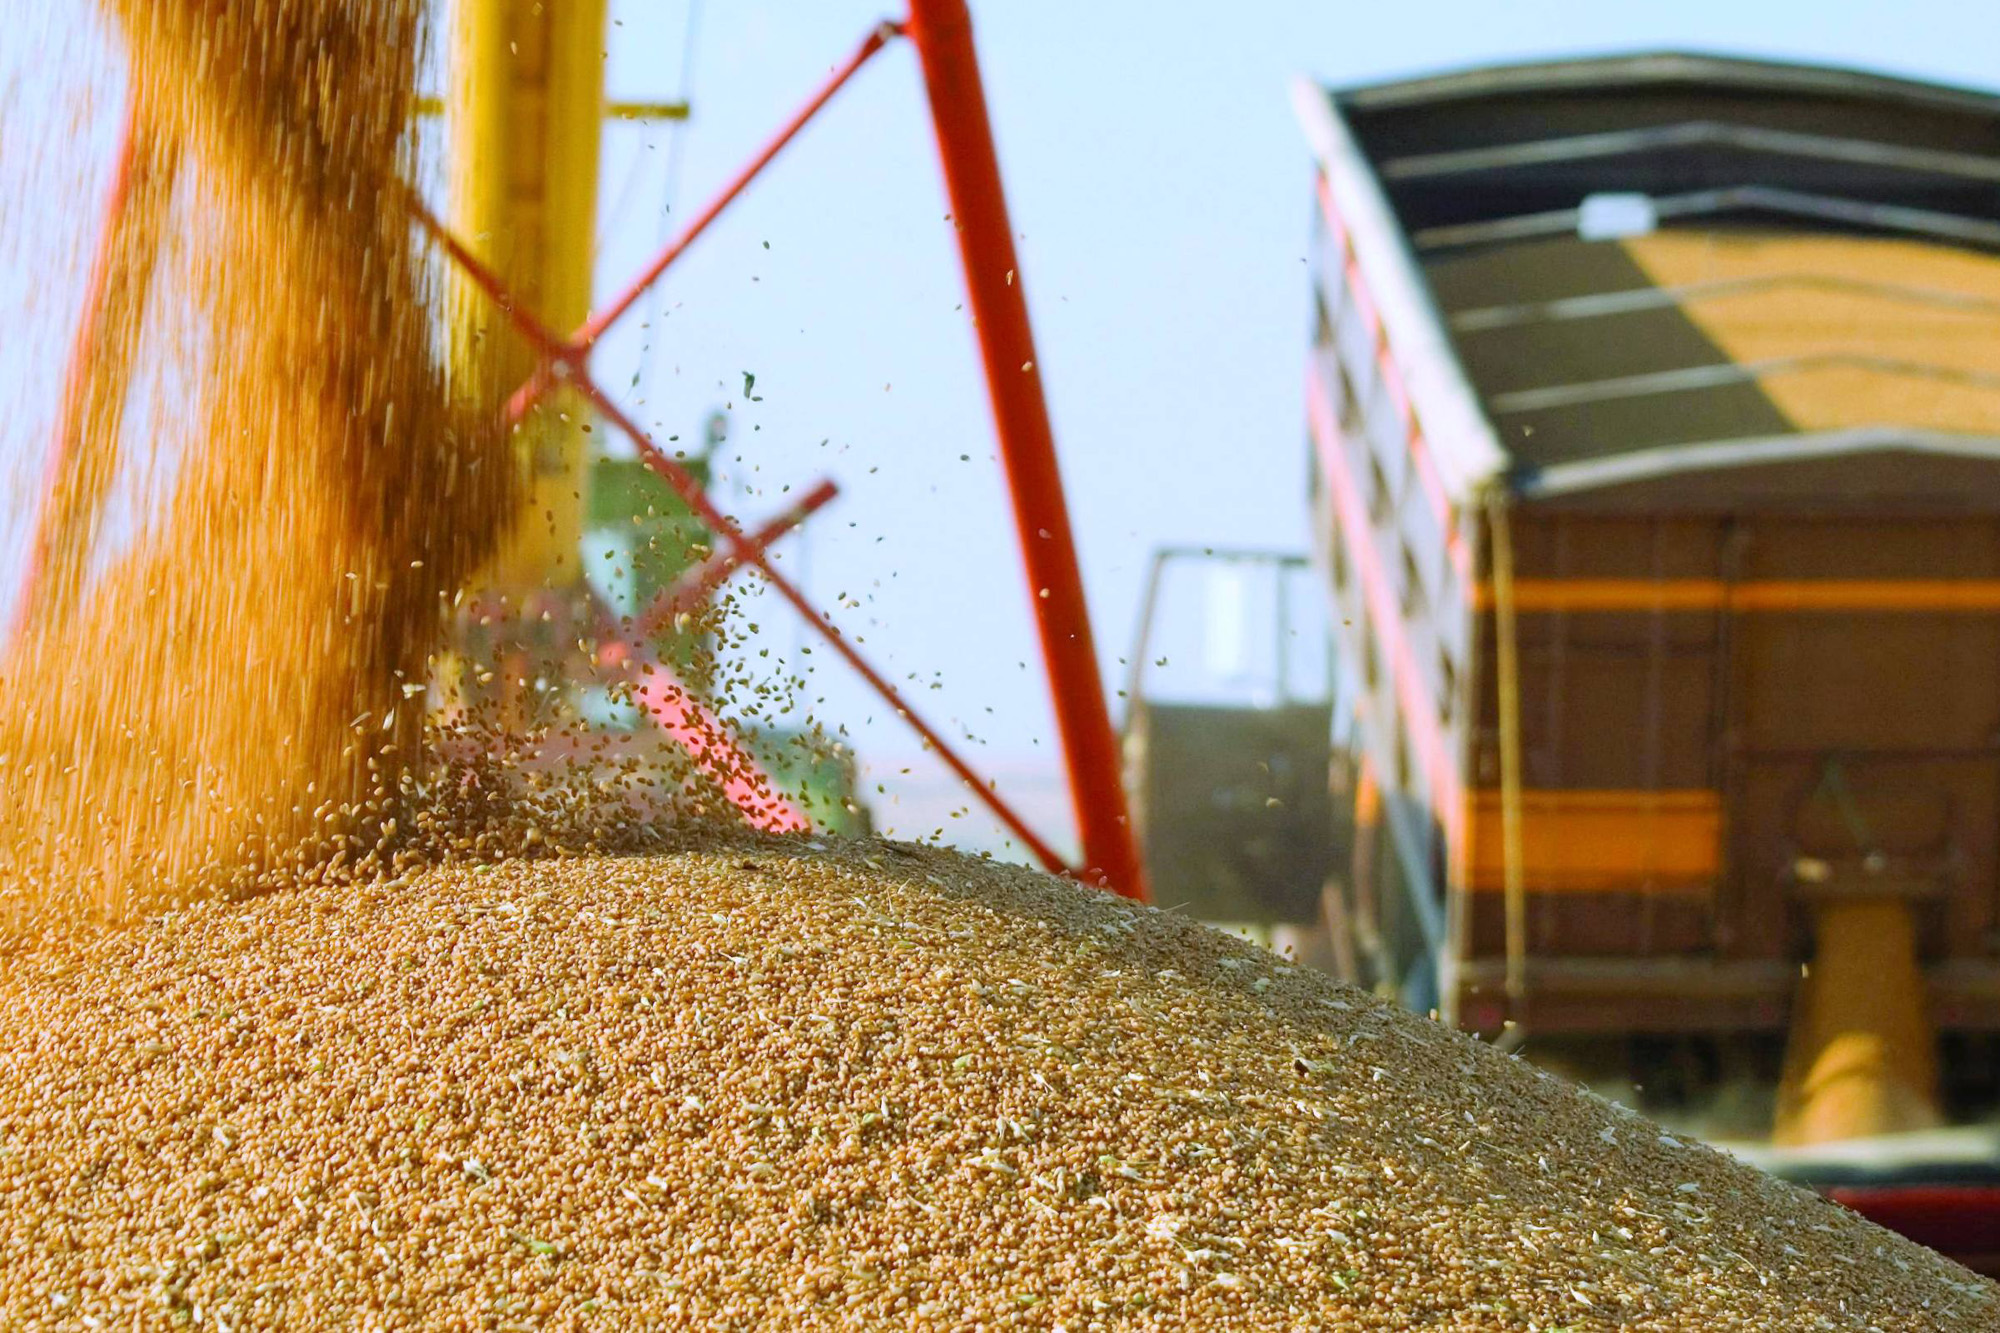 МЖД зафиксировала рост погрузки зерновых в брянском регионе на 63 процента